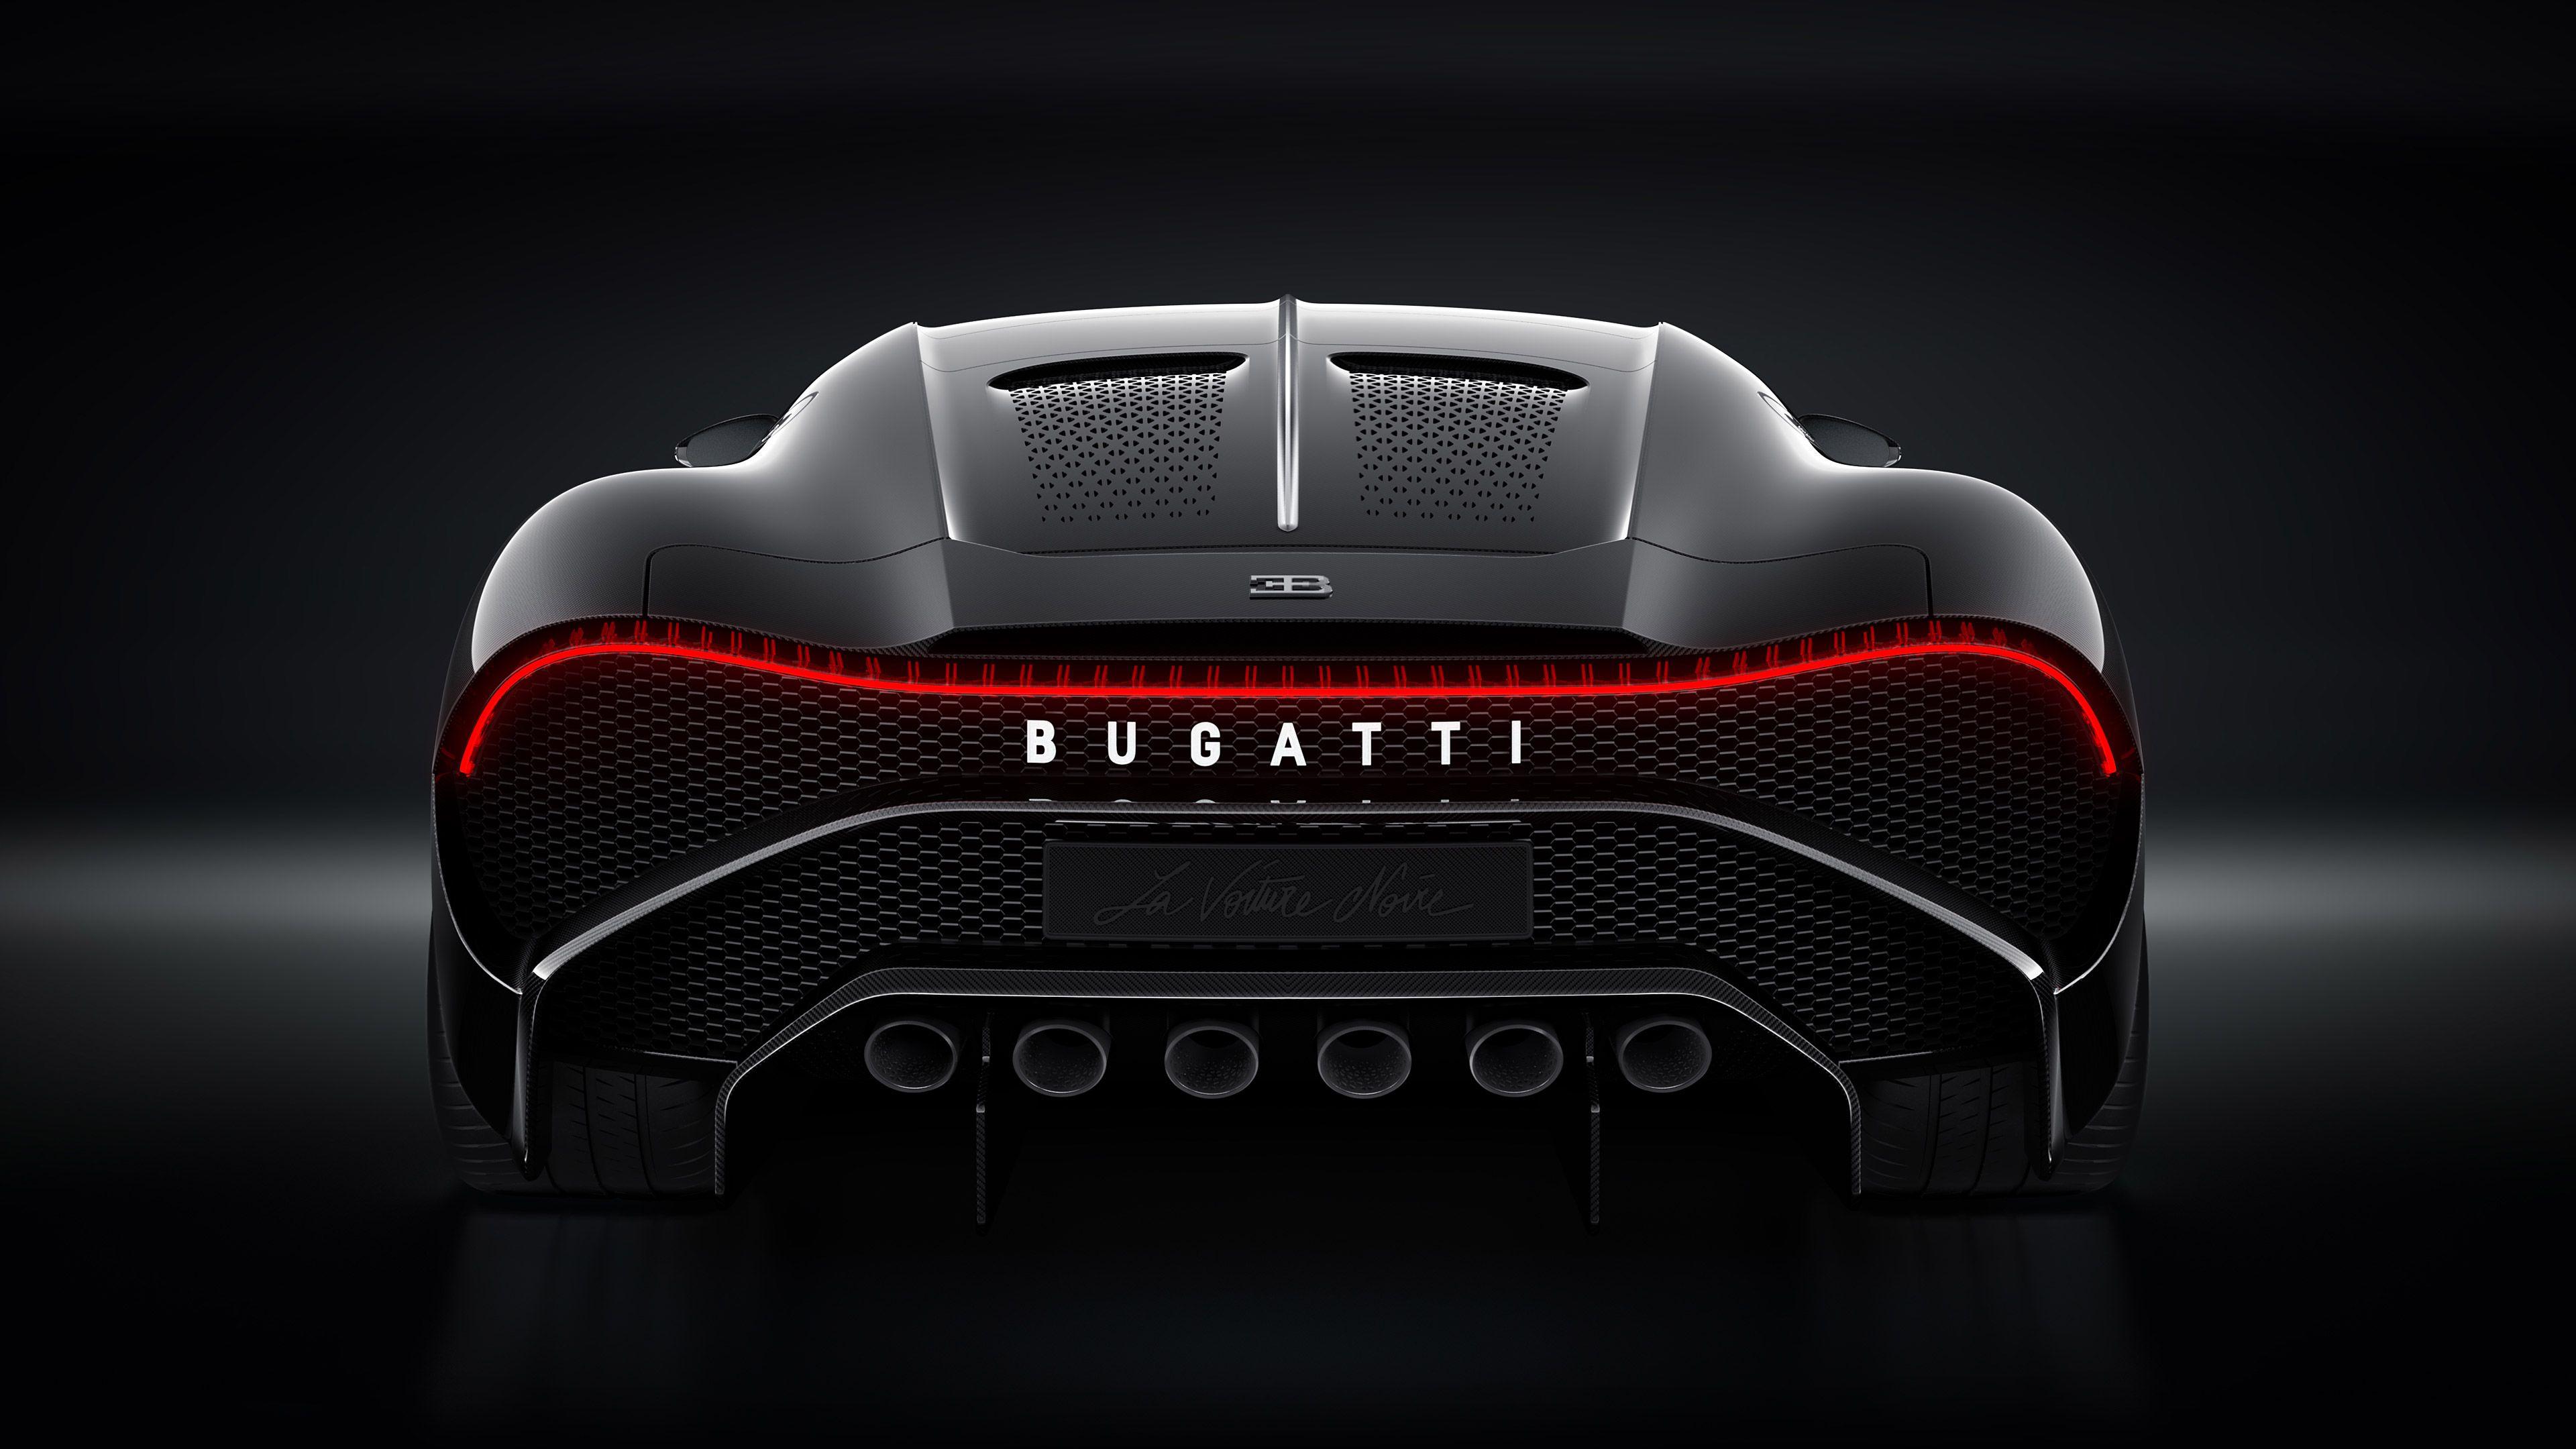 Bugatti La Voiture Noire Rear 2019 bugatti wallpaper 4k